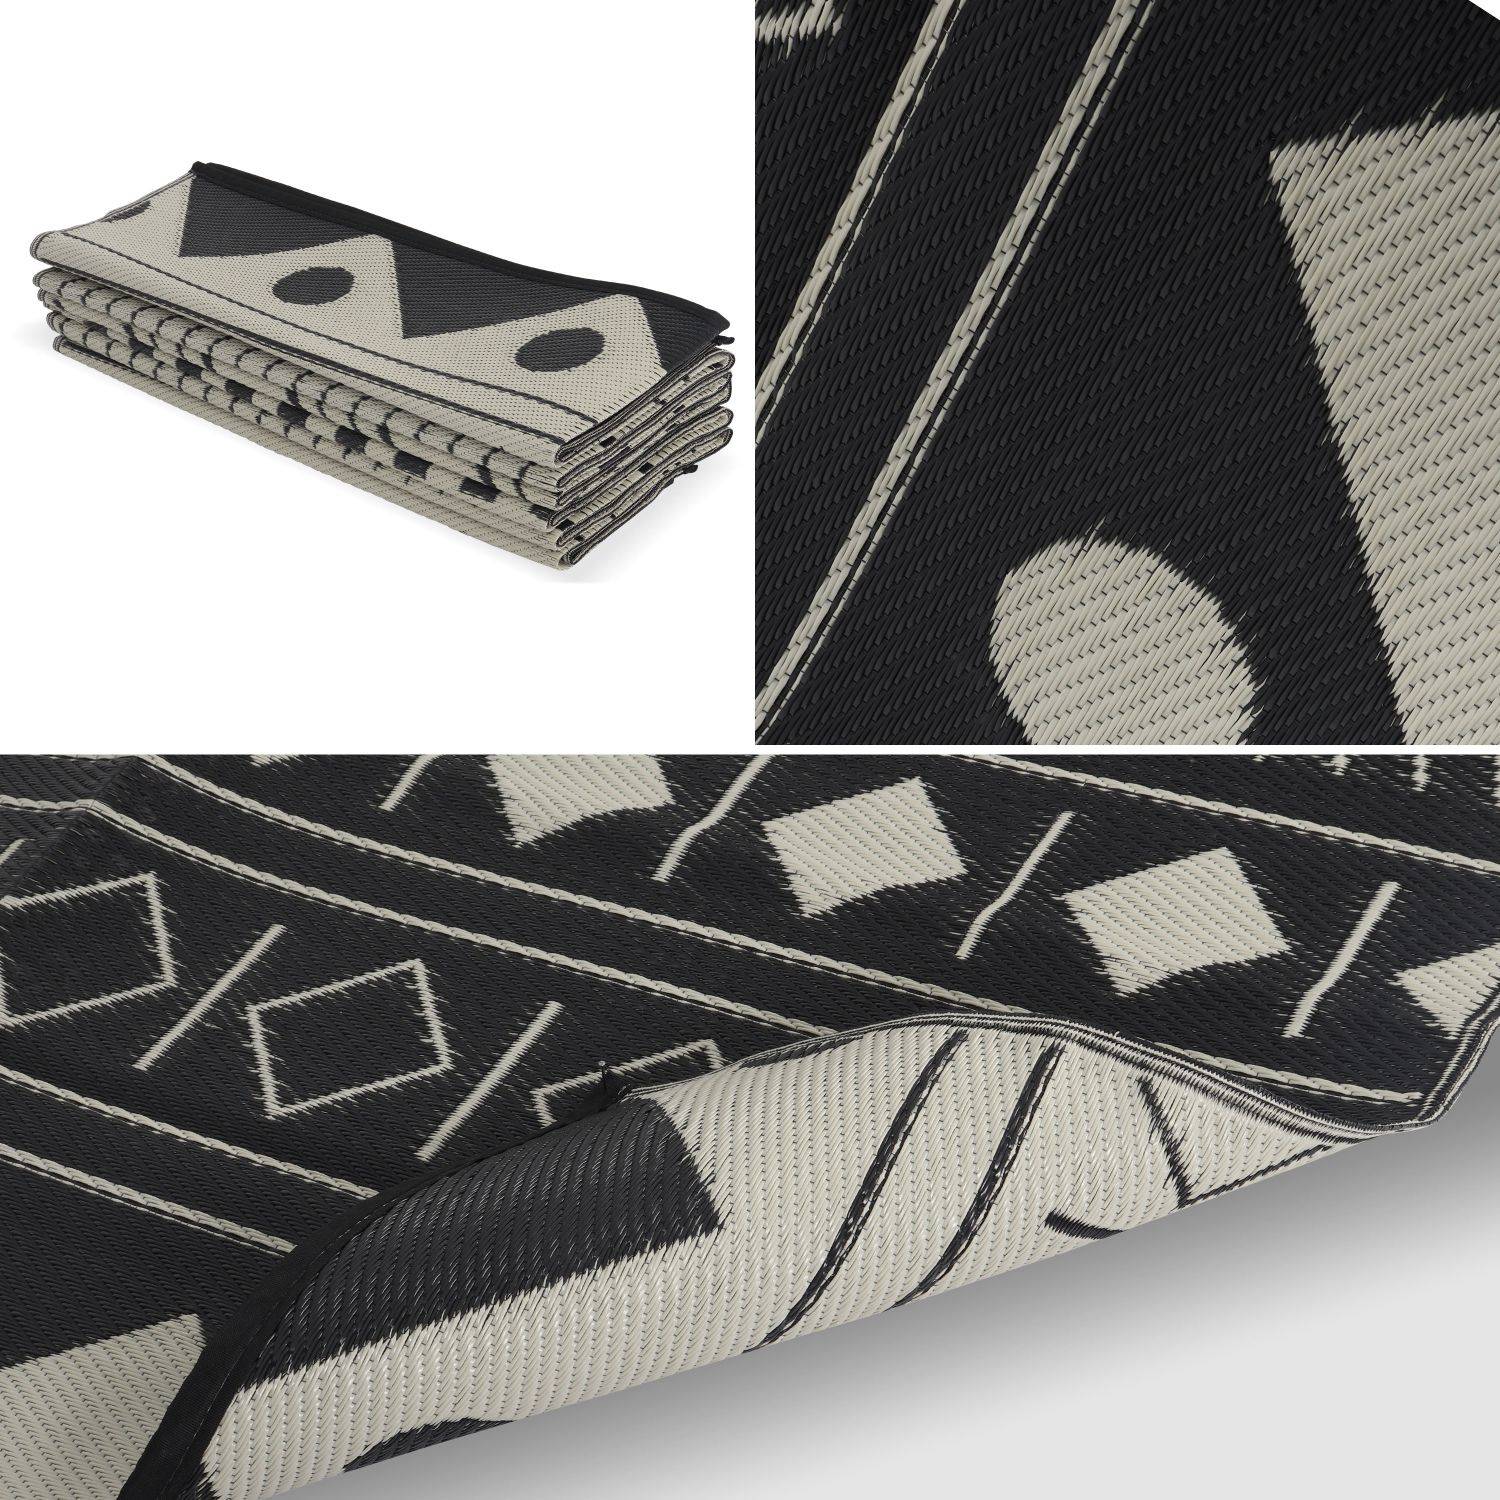 Outdoor rug - 270x360cm - Jacquard, reversible, rectangular, indoor/outdoor use - Bamako - Black-beige Photo3